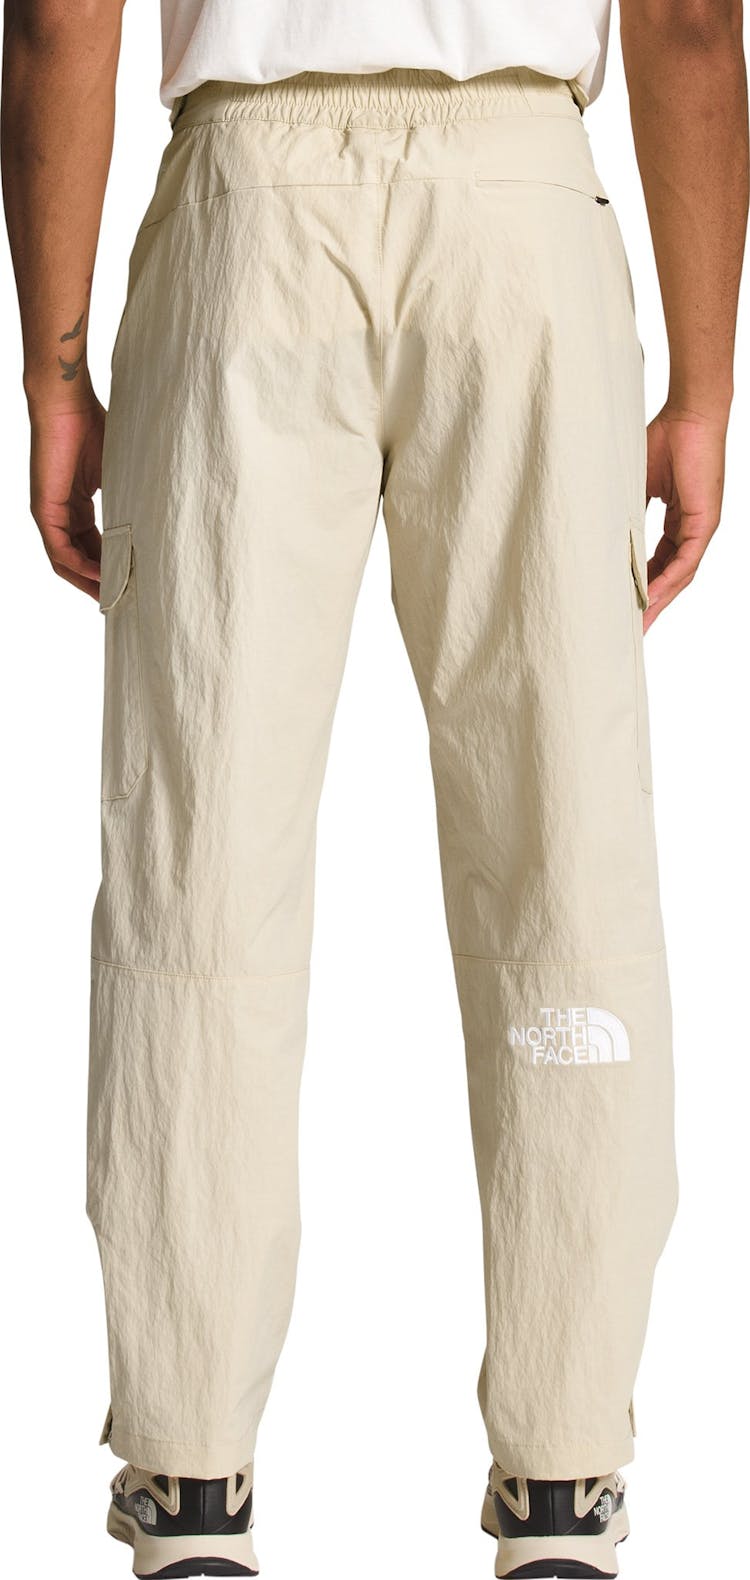 Numéro de l'image de la galerie de produits 2 pour le produit Pantalon cargo '78 Low-Fi Hi-Tek - Homme